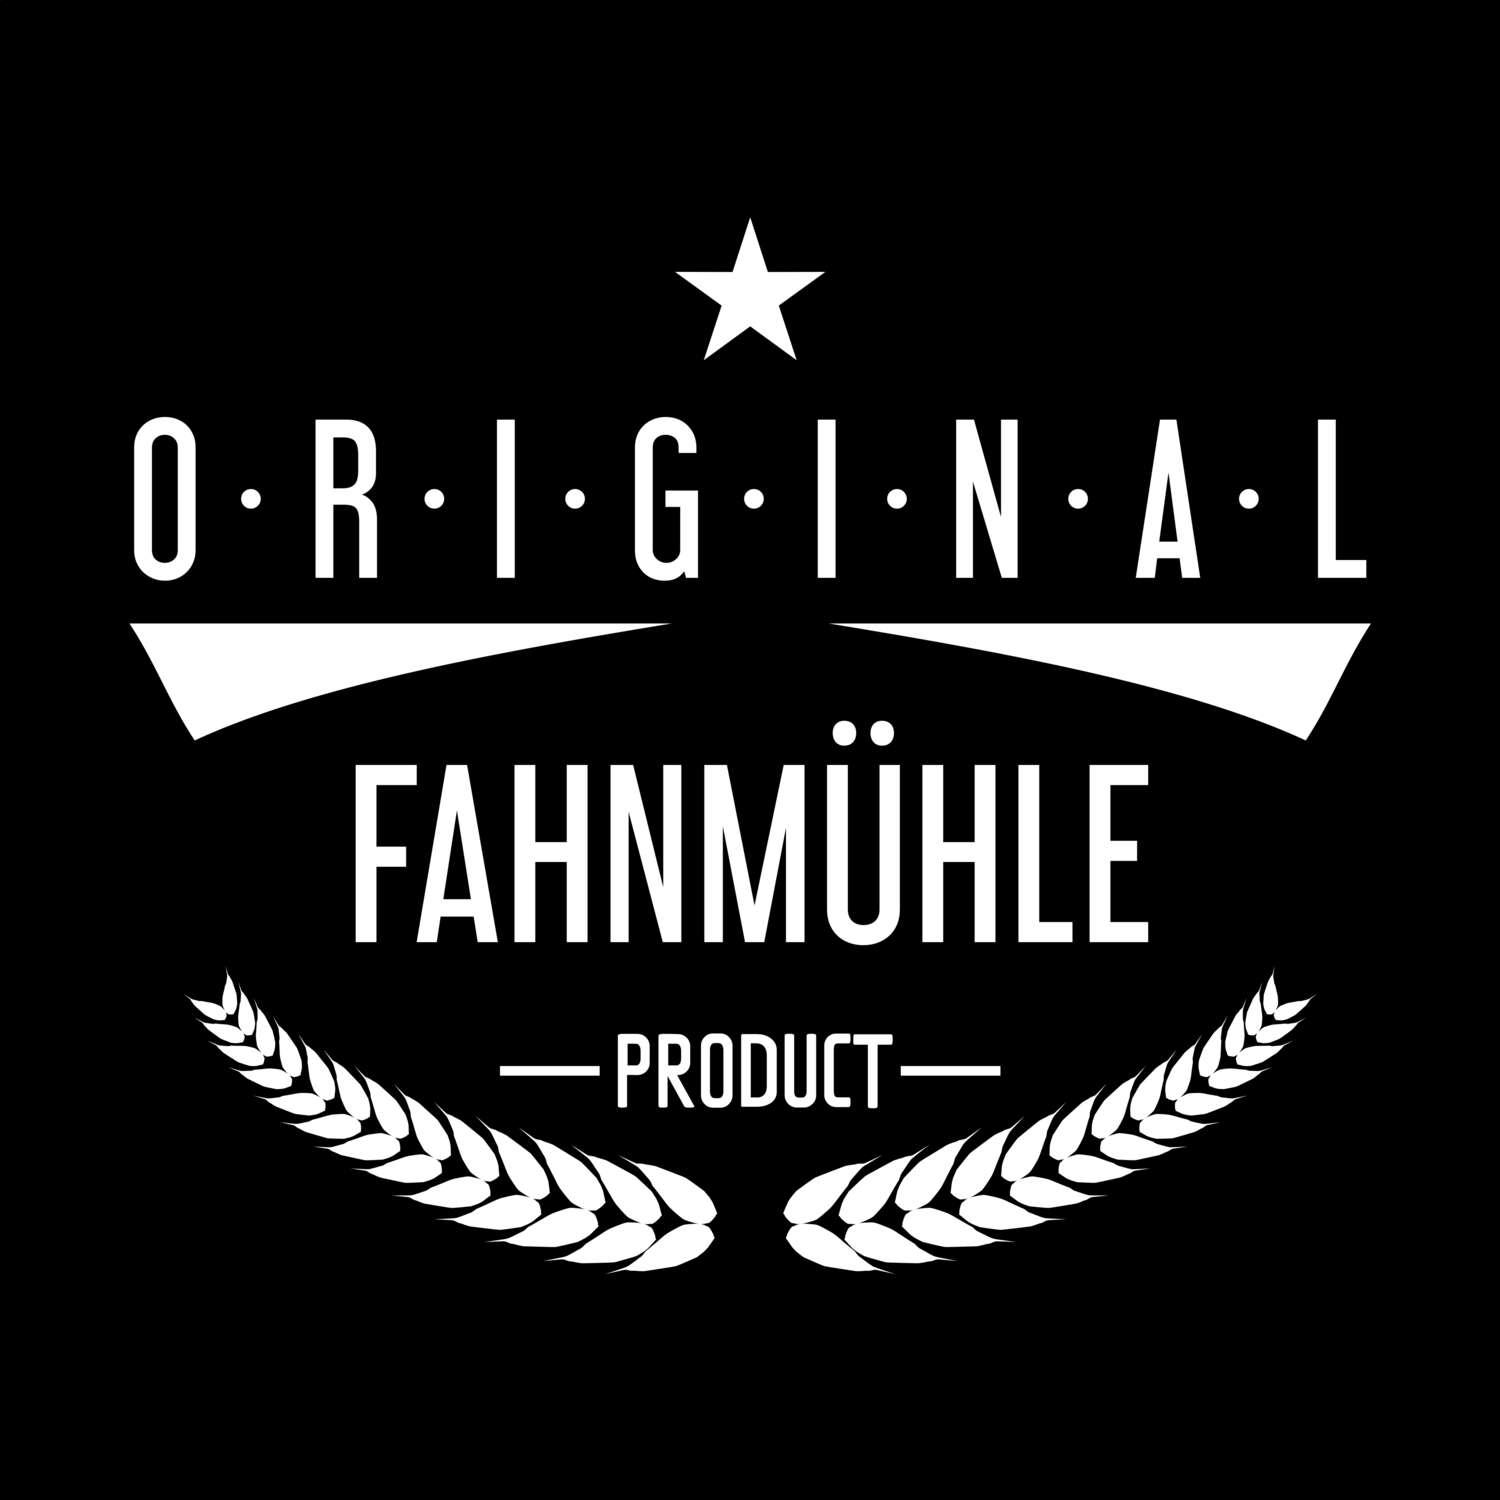 Fahnmühle T-Shirt »Original Product«